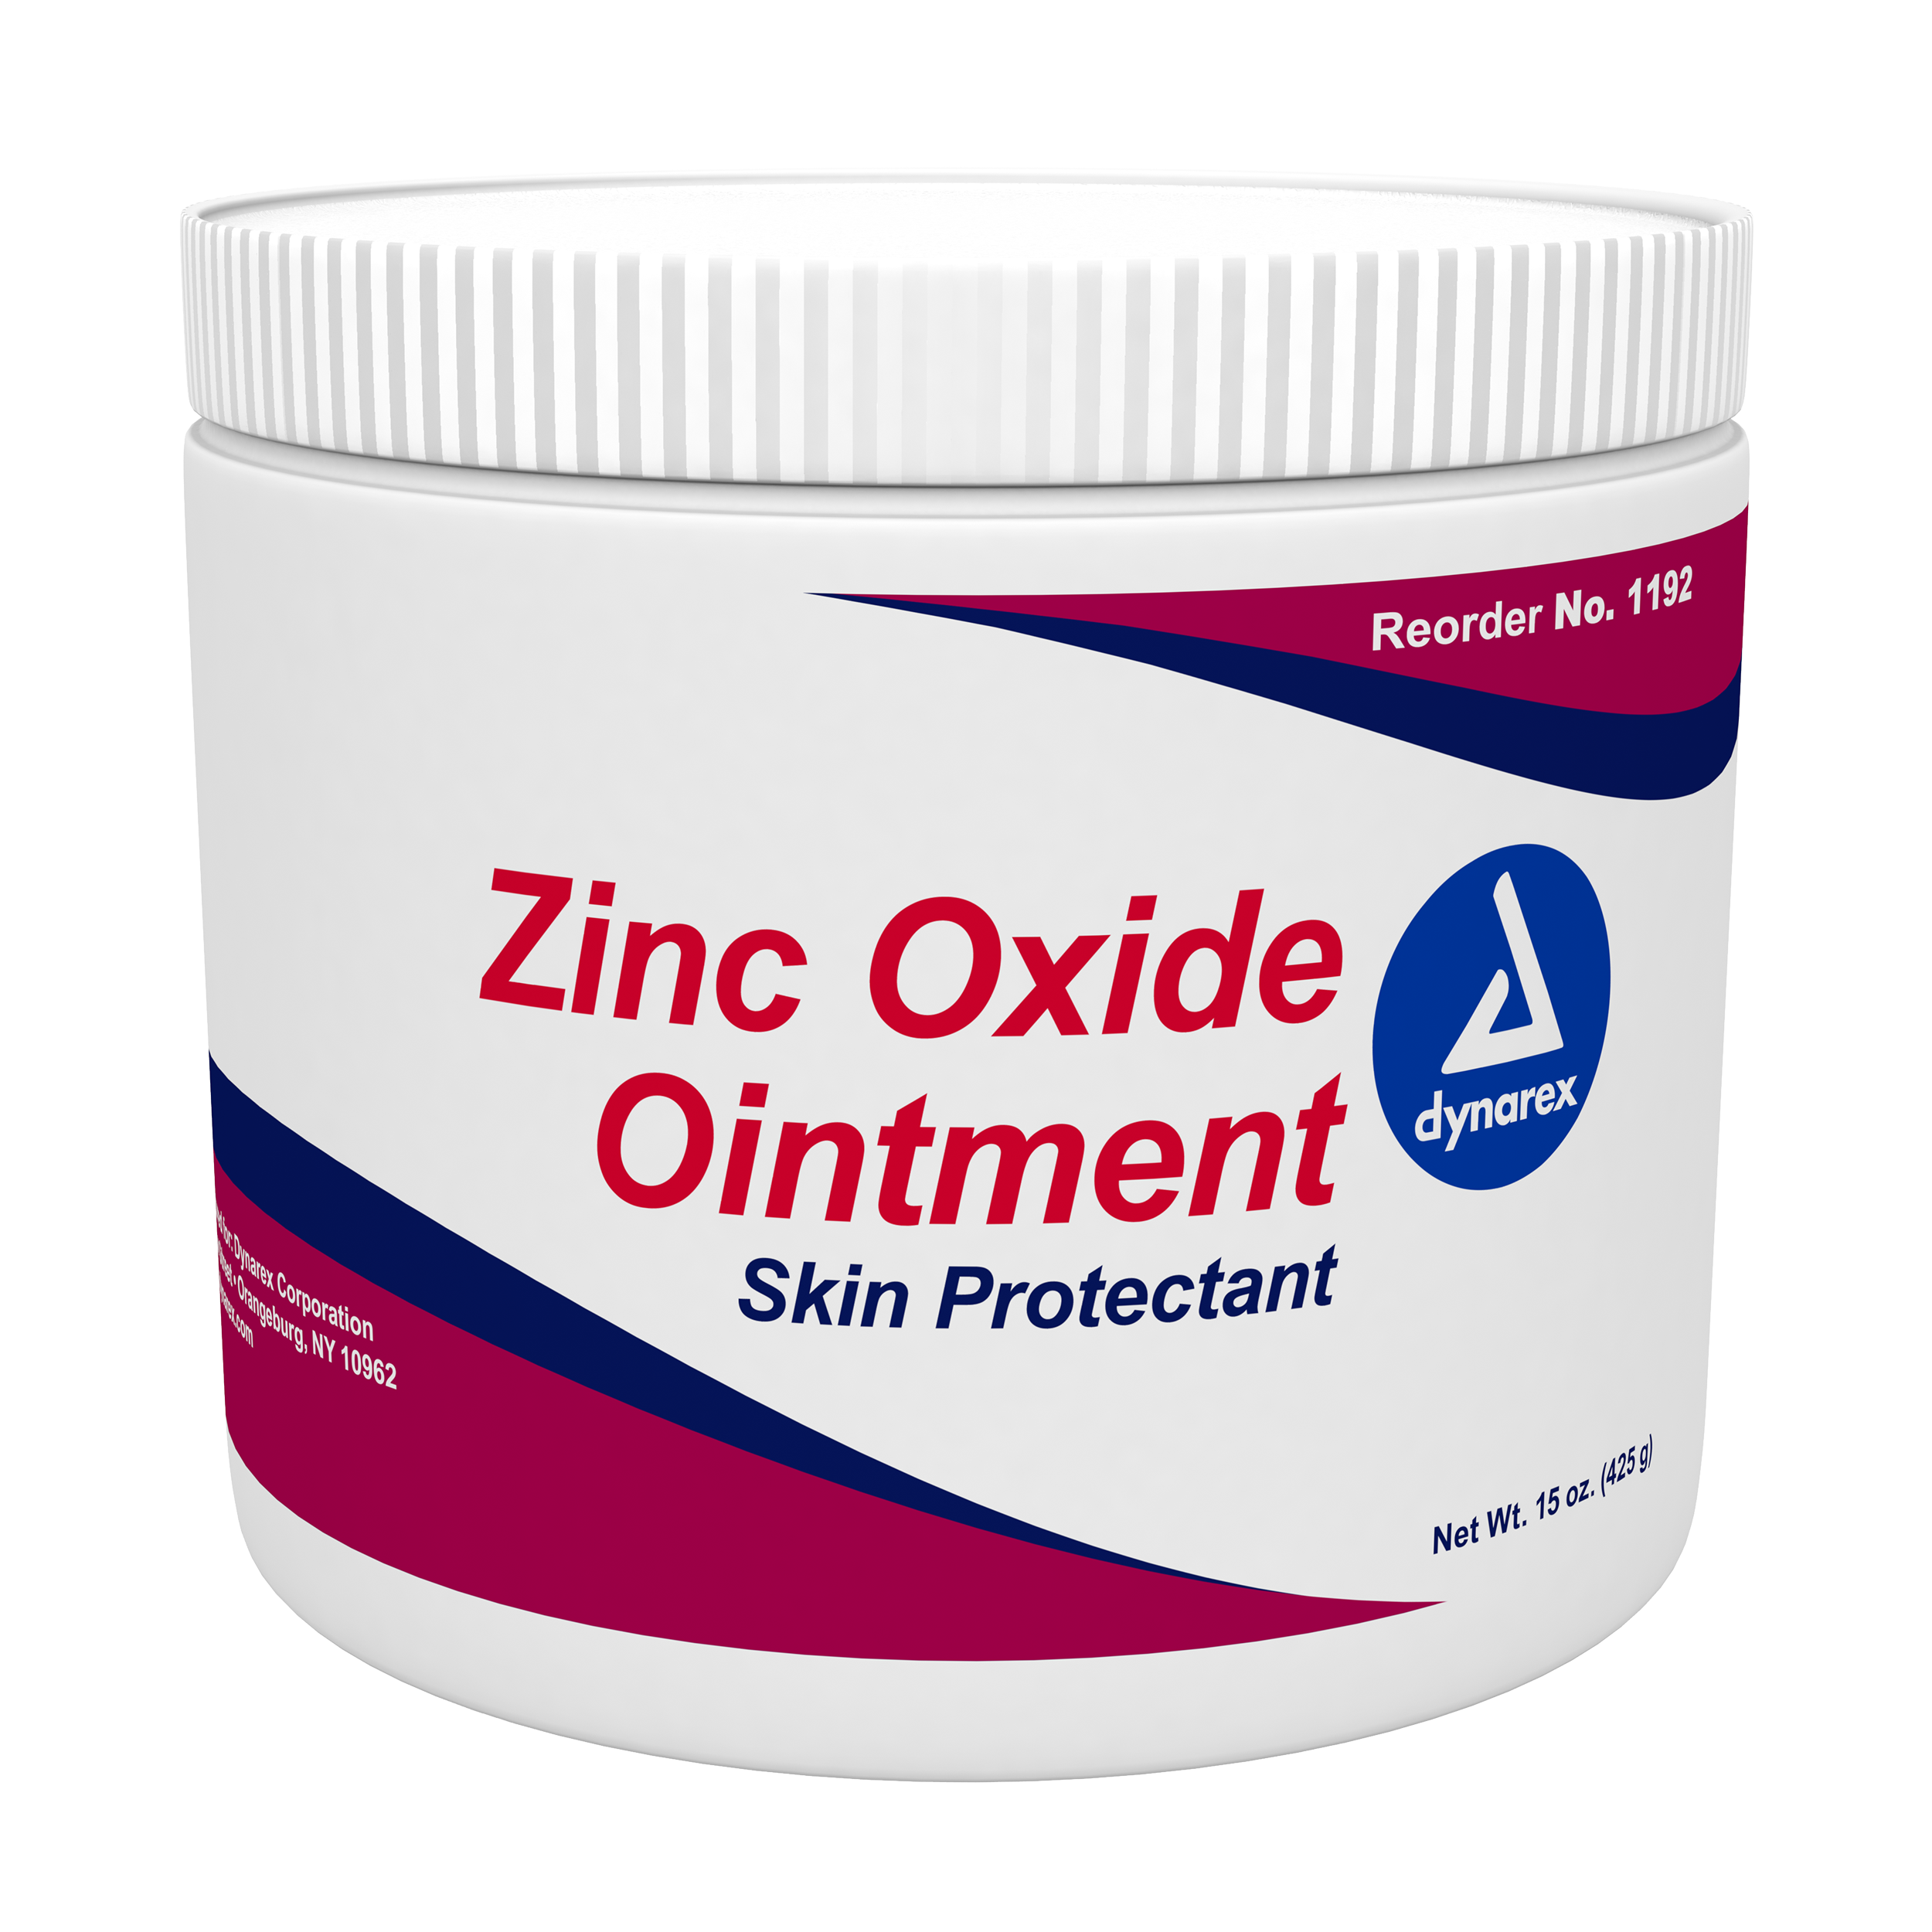 Zinc oxide cream